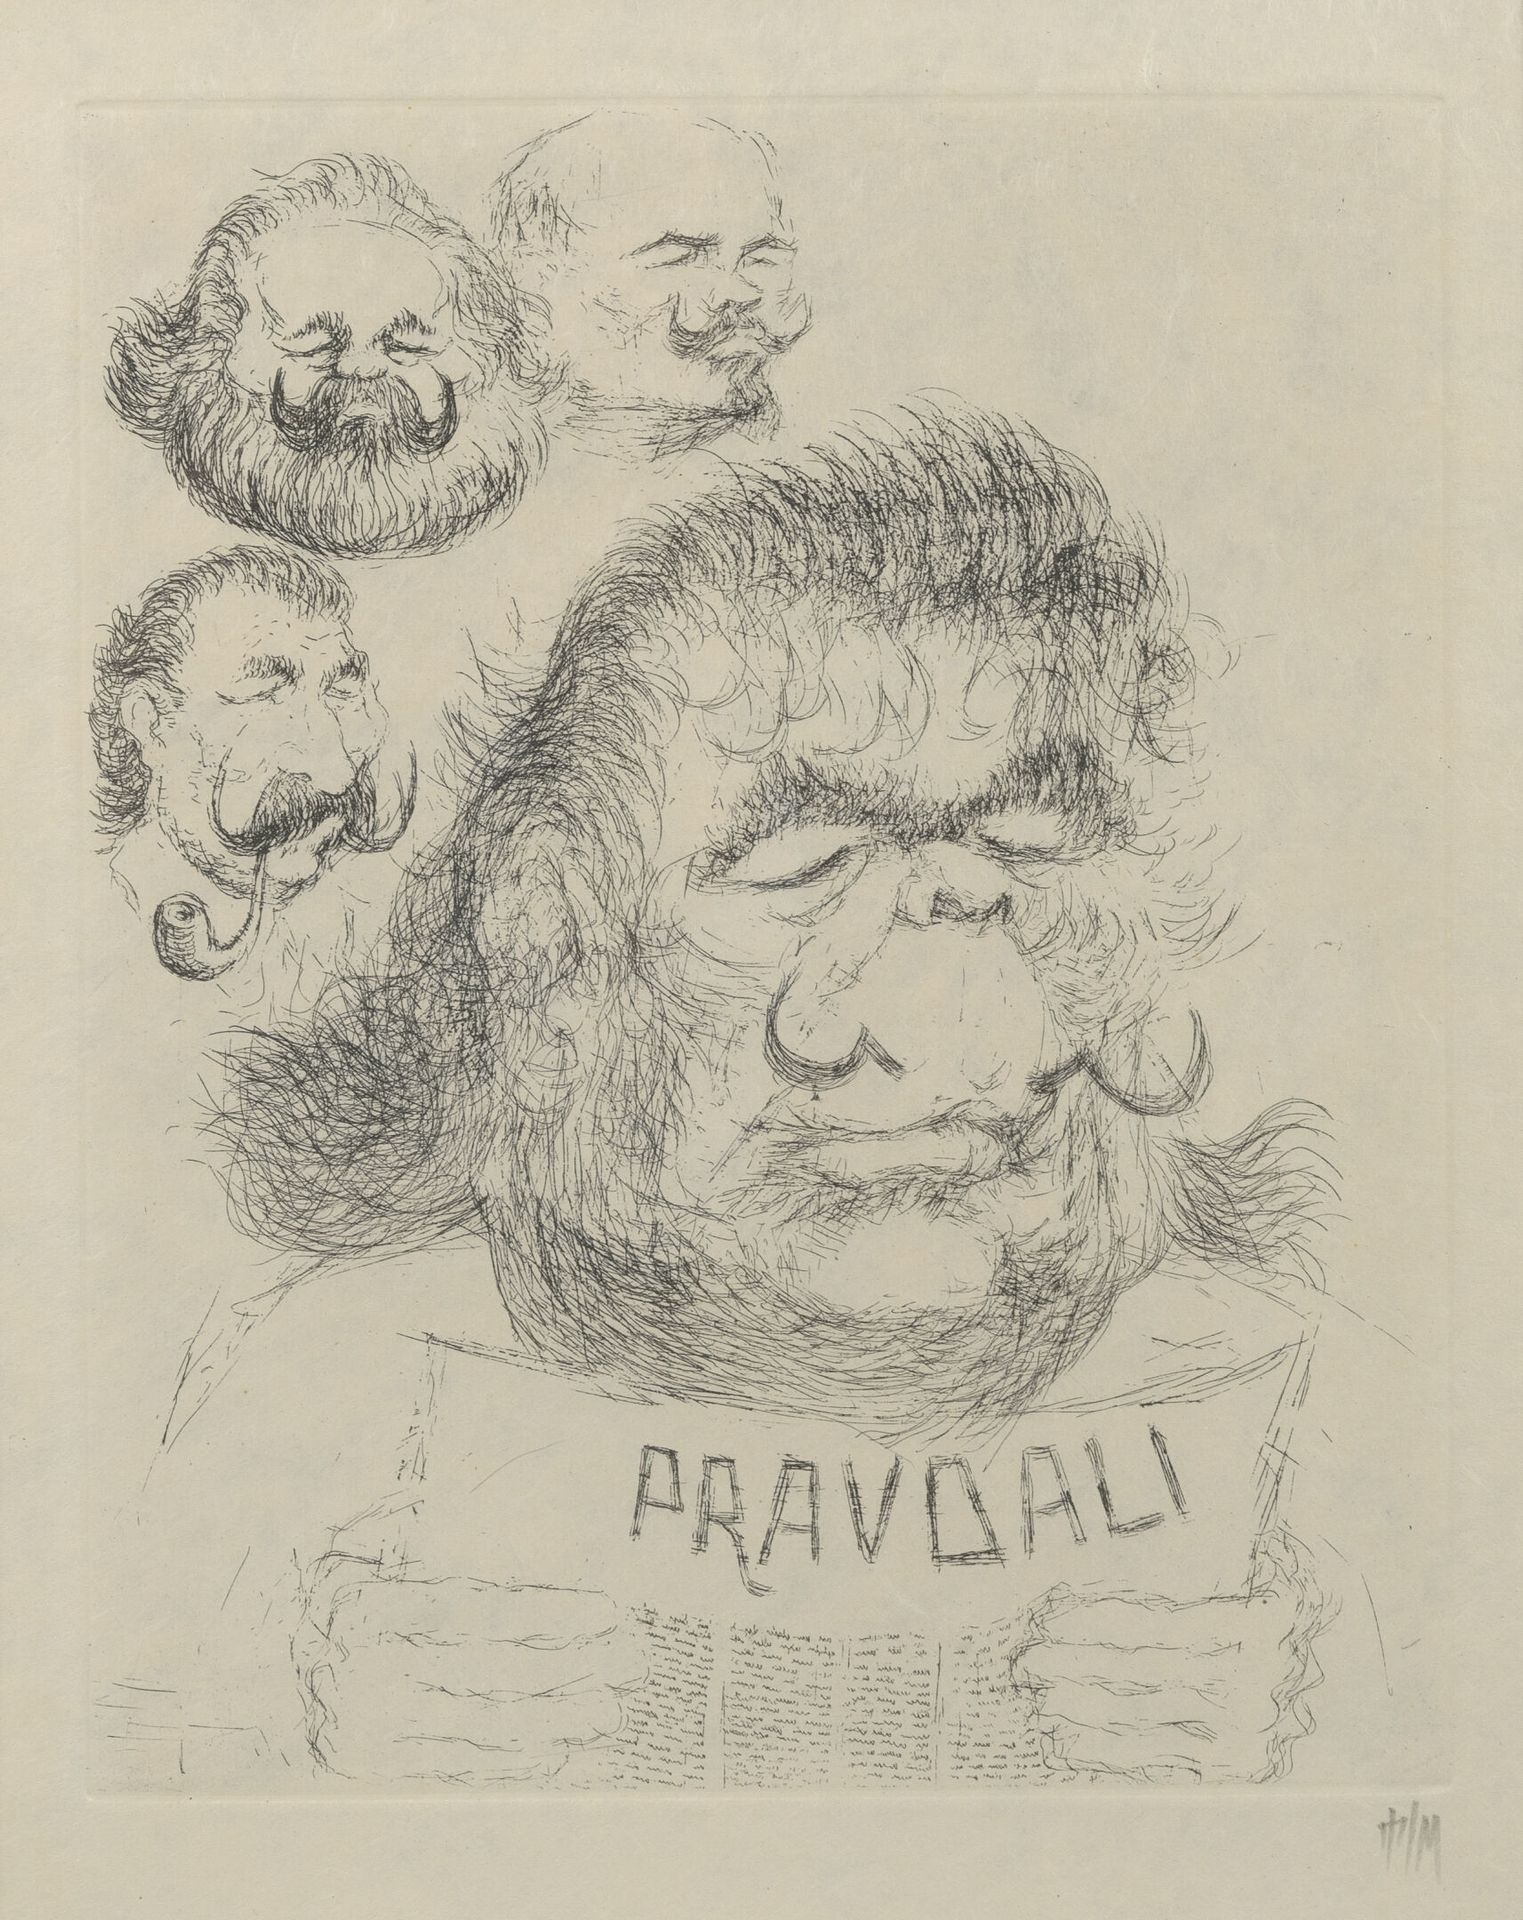 TIM (1919-2002) 合法性，1971年。

PravDali。

纸上蚀刻画。

右下方有签名。

38 x 28 cm。

染色剂。